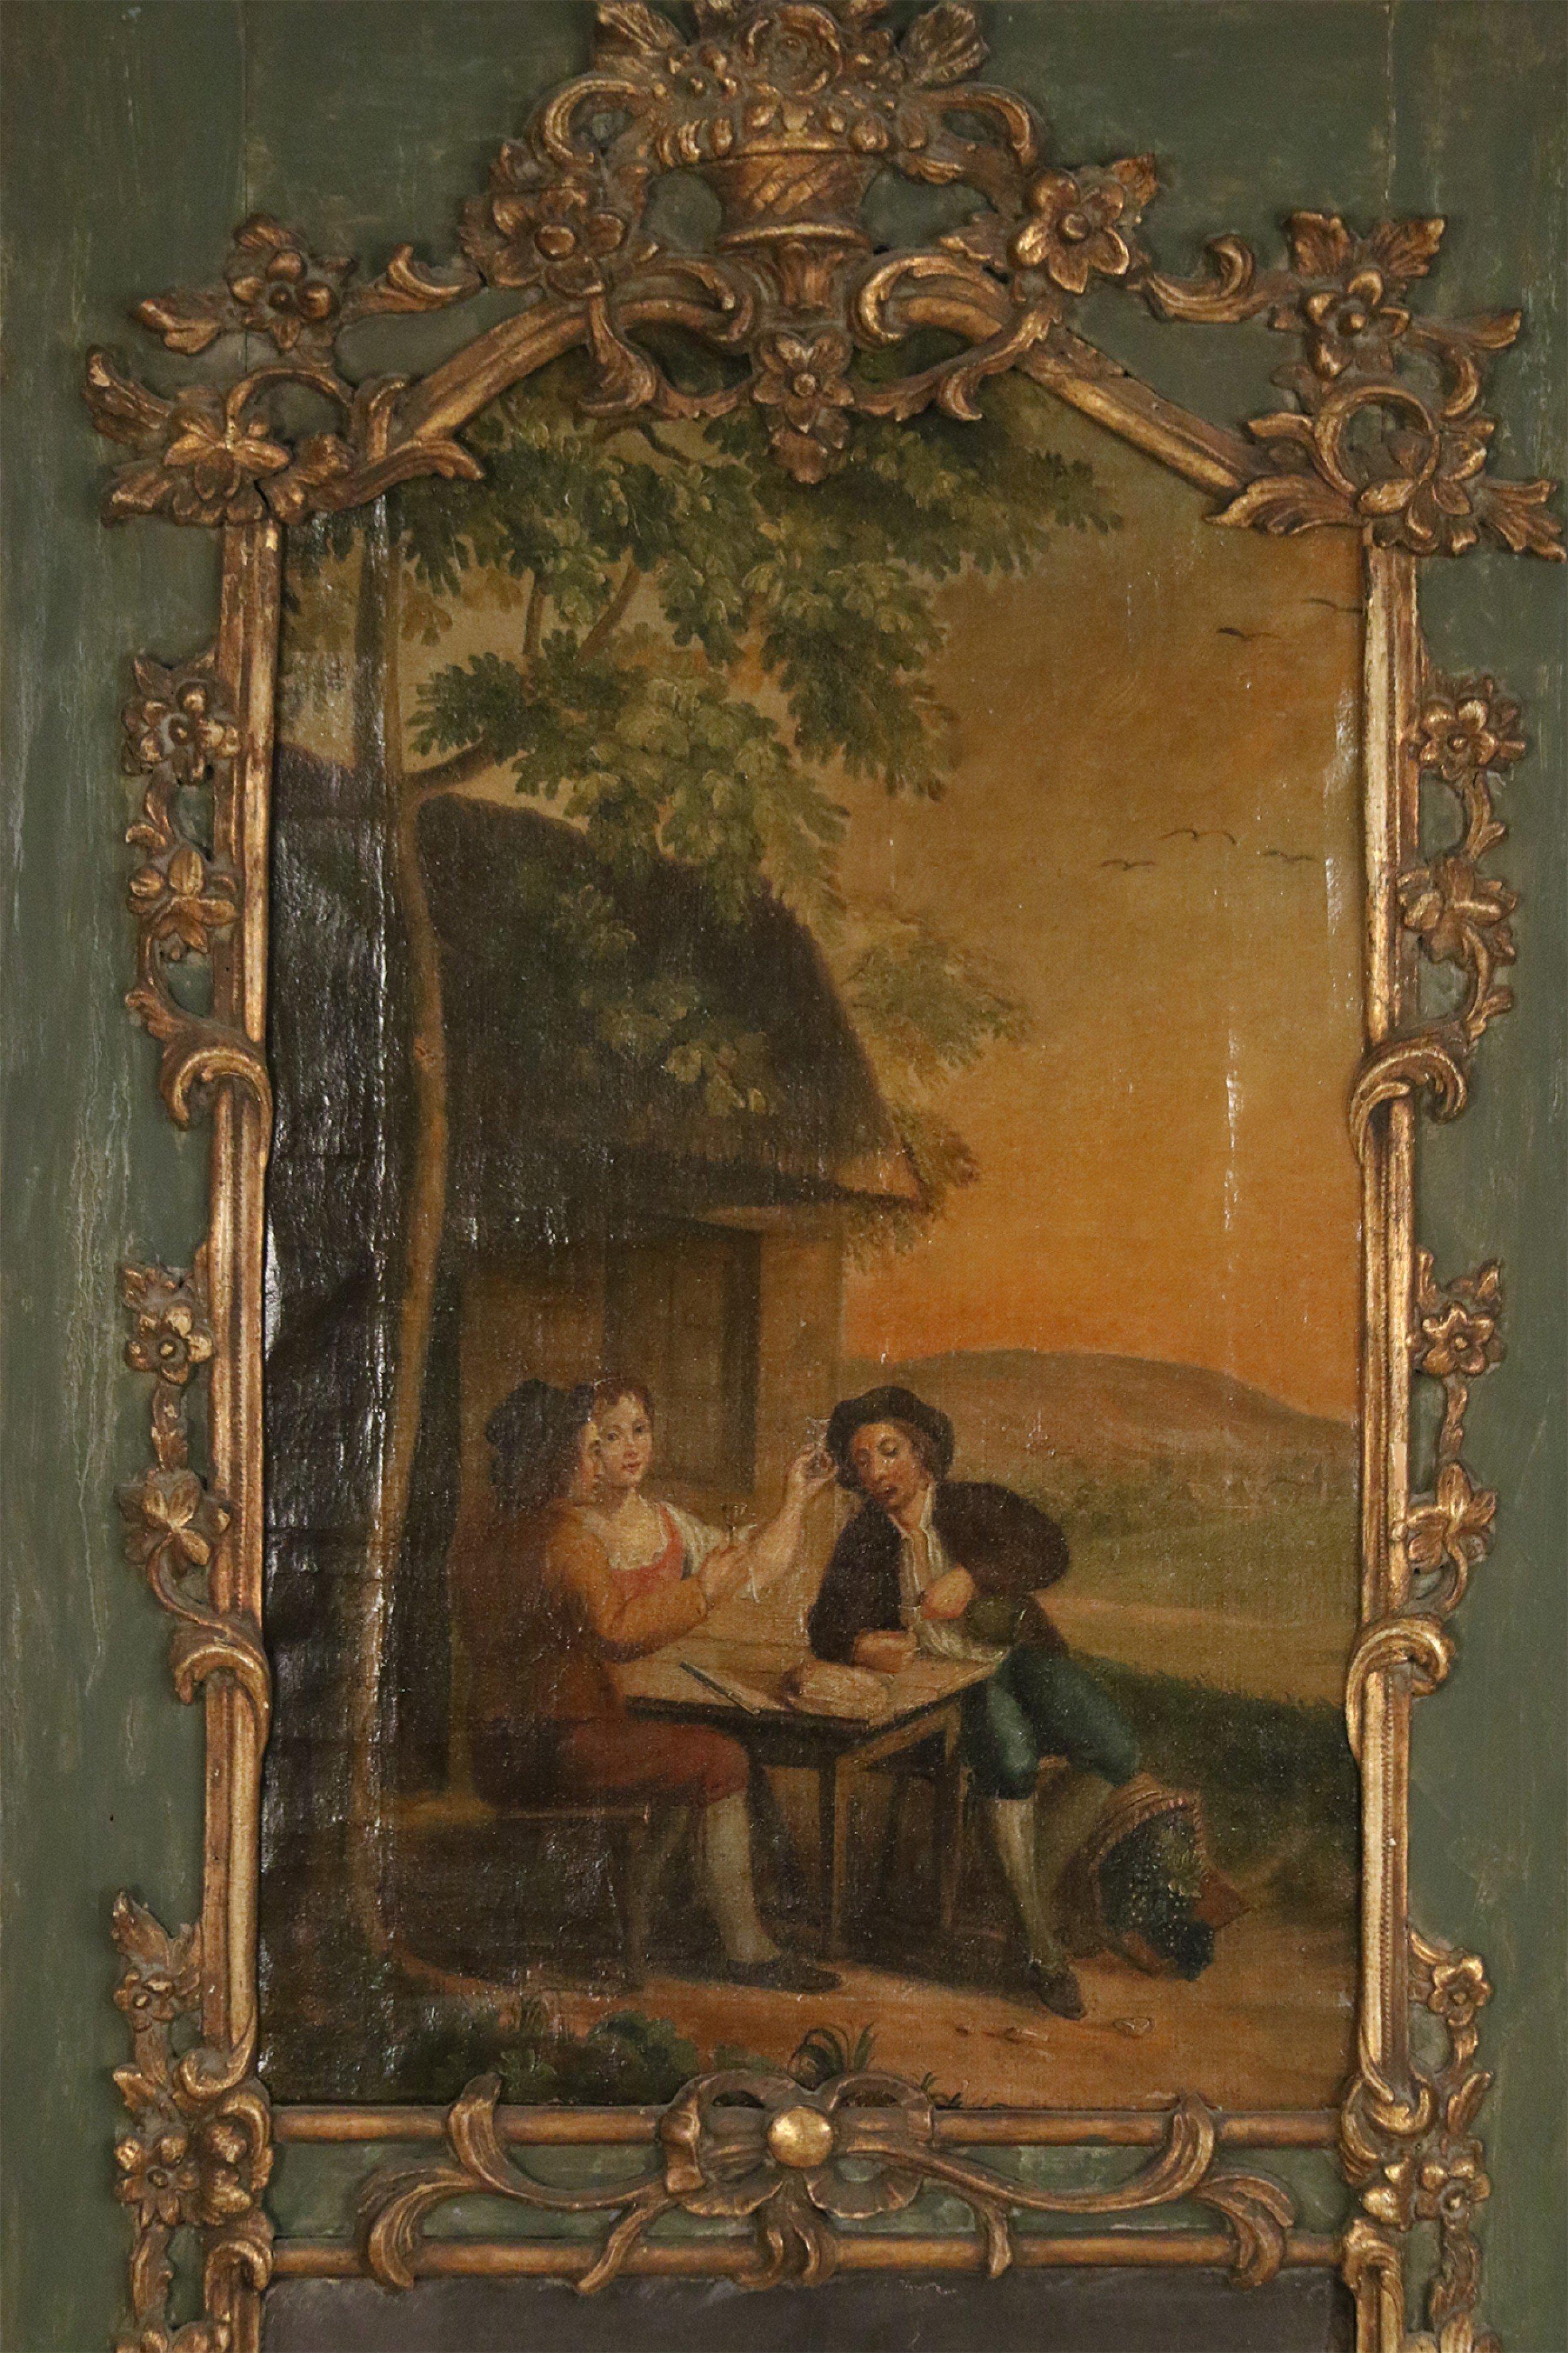 Miroir mural trumeau Louis XV français avec une scène peinte d'une famille assise à une table à l'extérieur dans un cadre orné de bois doré sur une pièce arrière en bois peint en vert au-dessus d'un miroir antique rectangulaire.